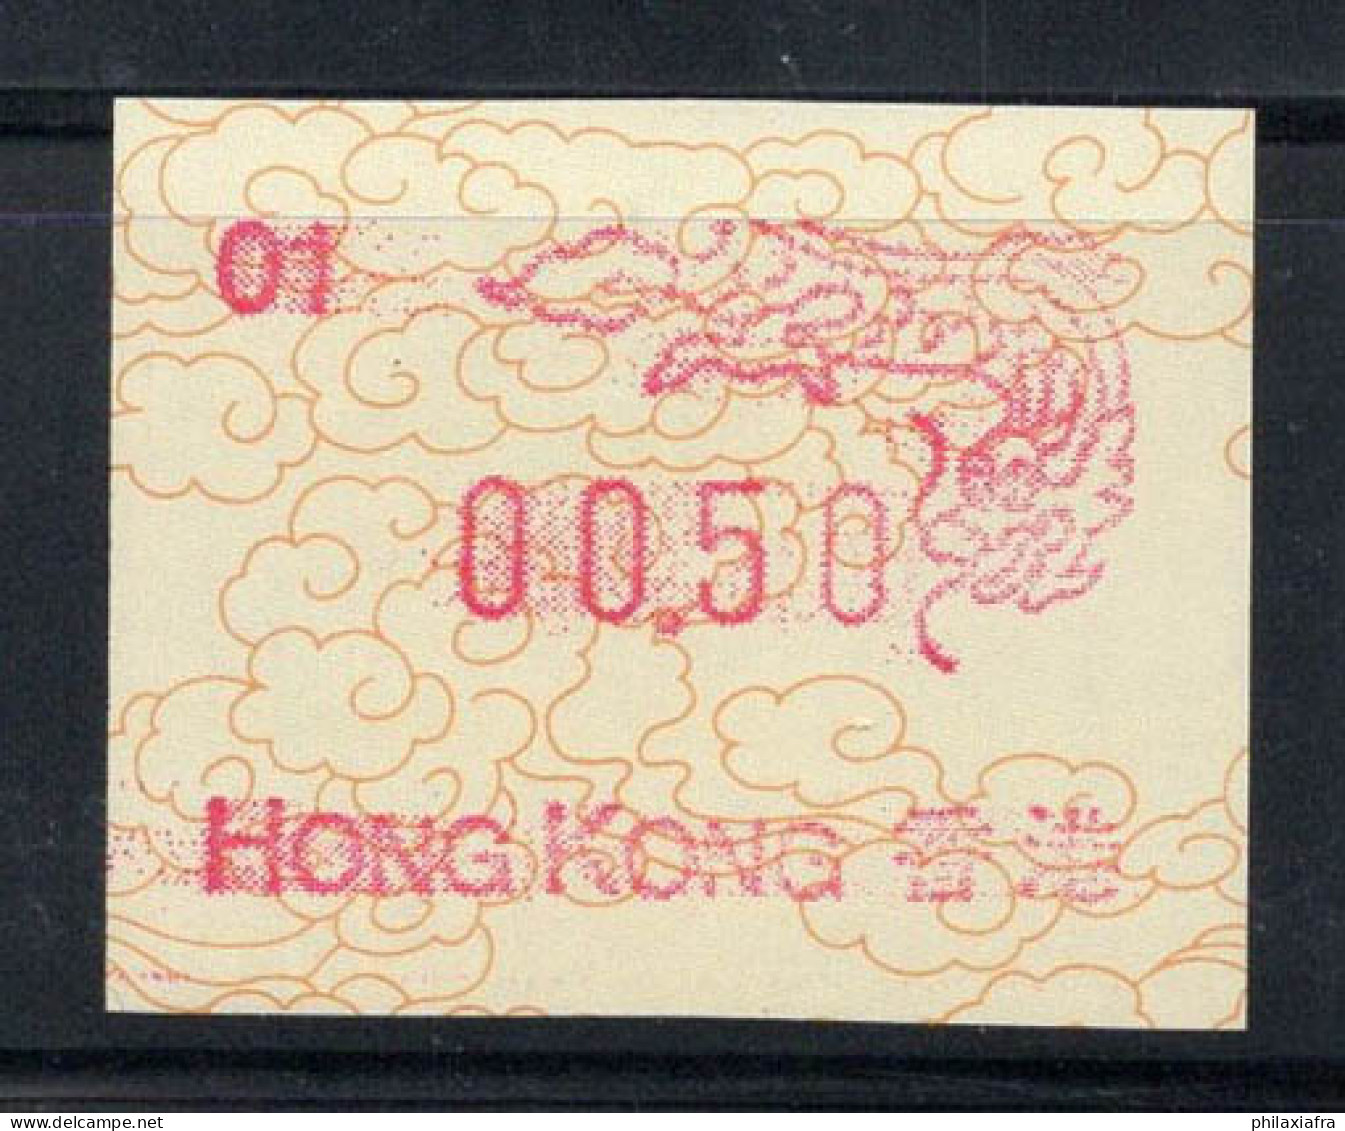 Hong Kong 1988 Mi. 3 Neuf ** 100% 00.50 - Distributeurs